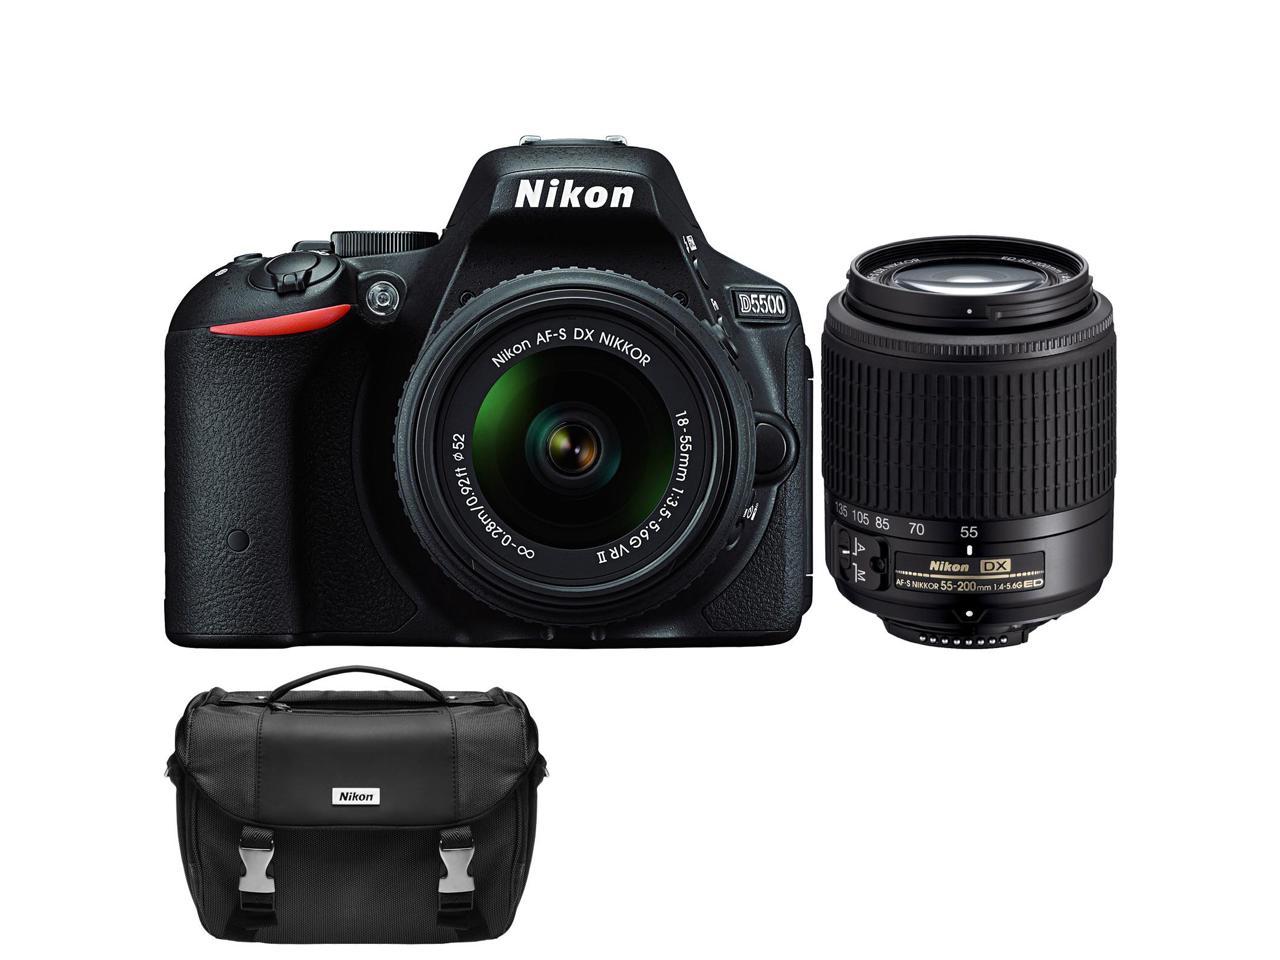 Nikon D5500 Wi-Fi Digital SLR Camera & 18-55mm G VR DX II AF-S Zoom (Black)  with 55-200mm G DX AF-S ED Lens + Case